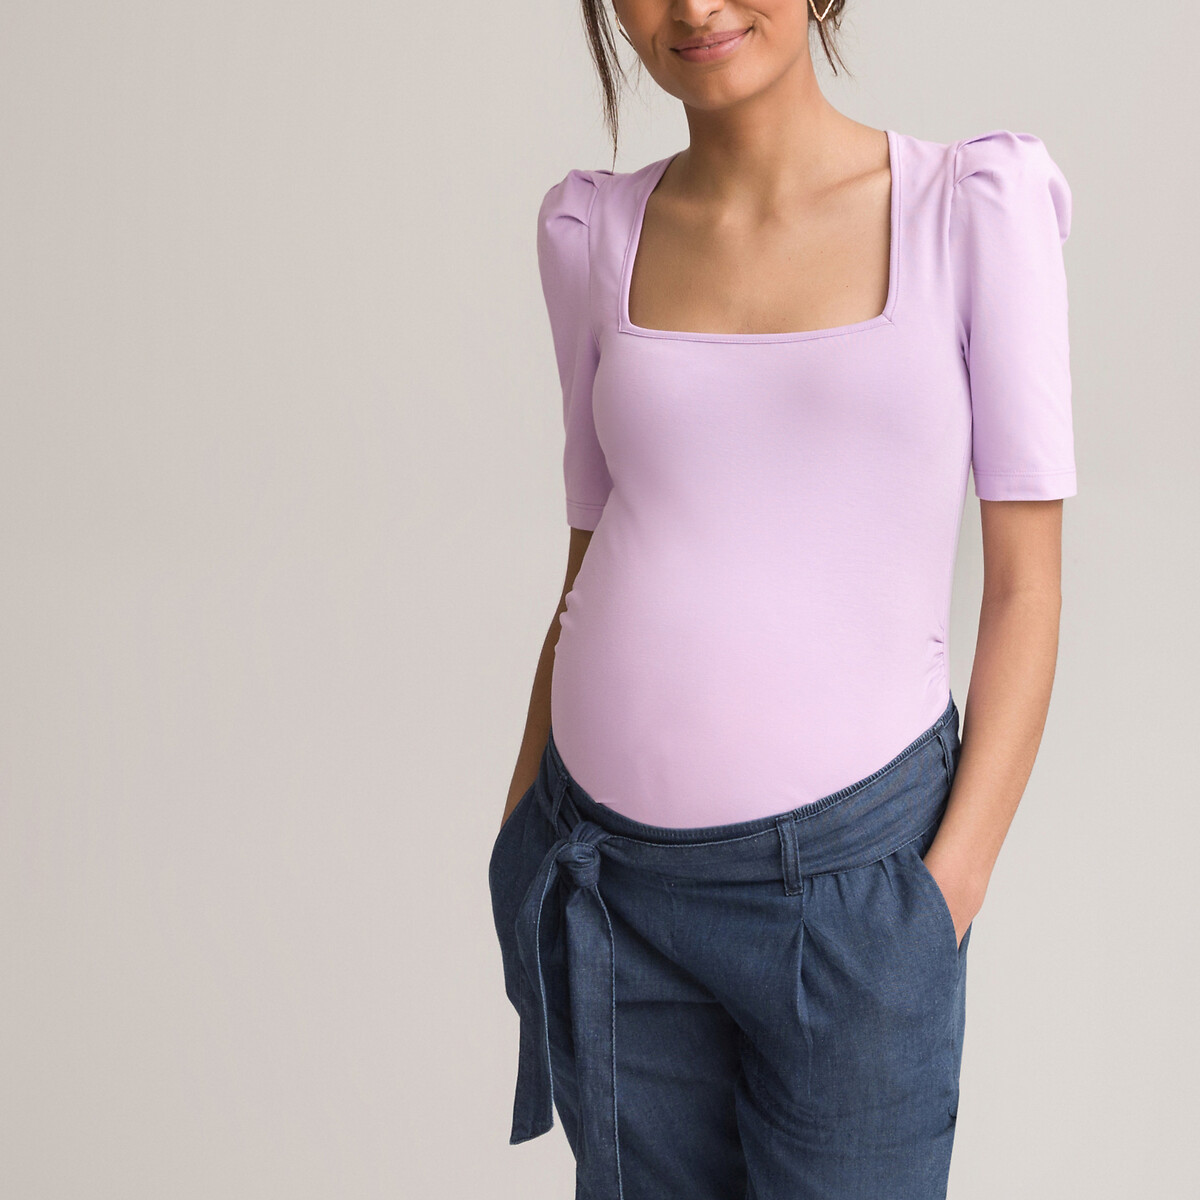 MAXMODA Top Maternité Allaitement Femmes Enceintes Habits Haut Grossesse Manche 3/4 T-Shirt S-XXL